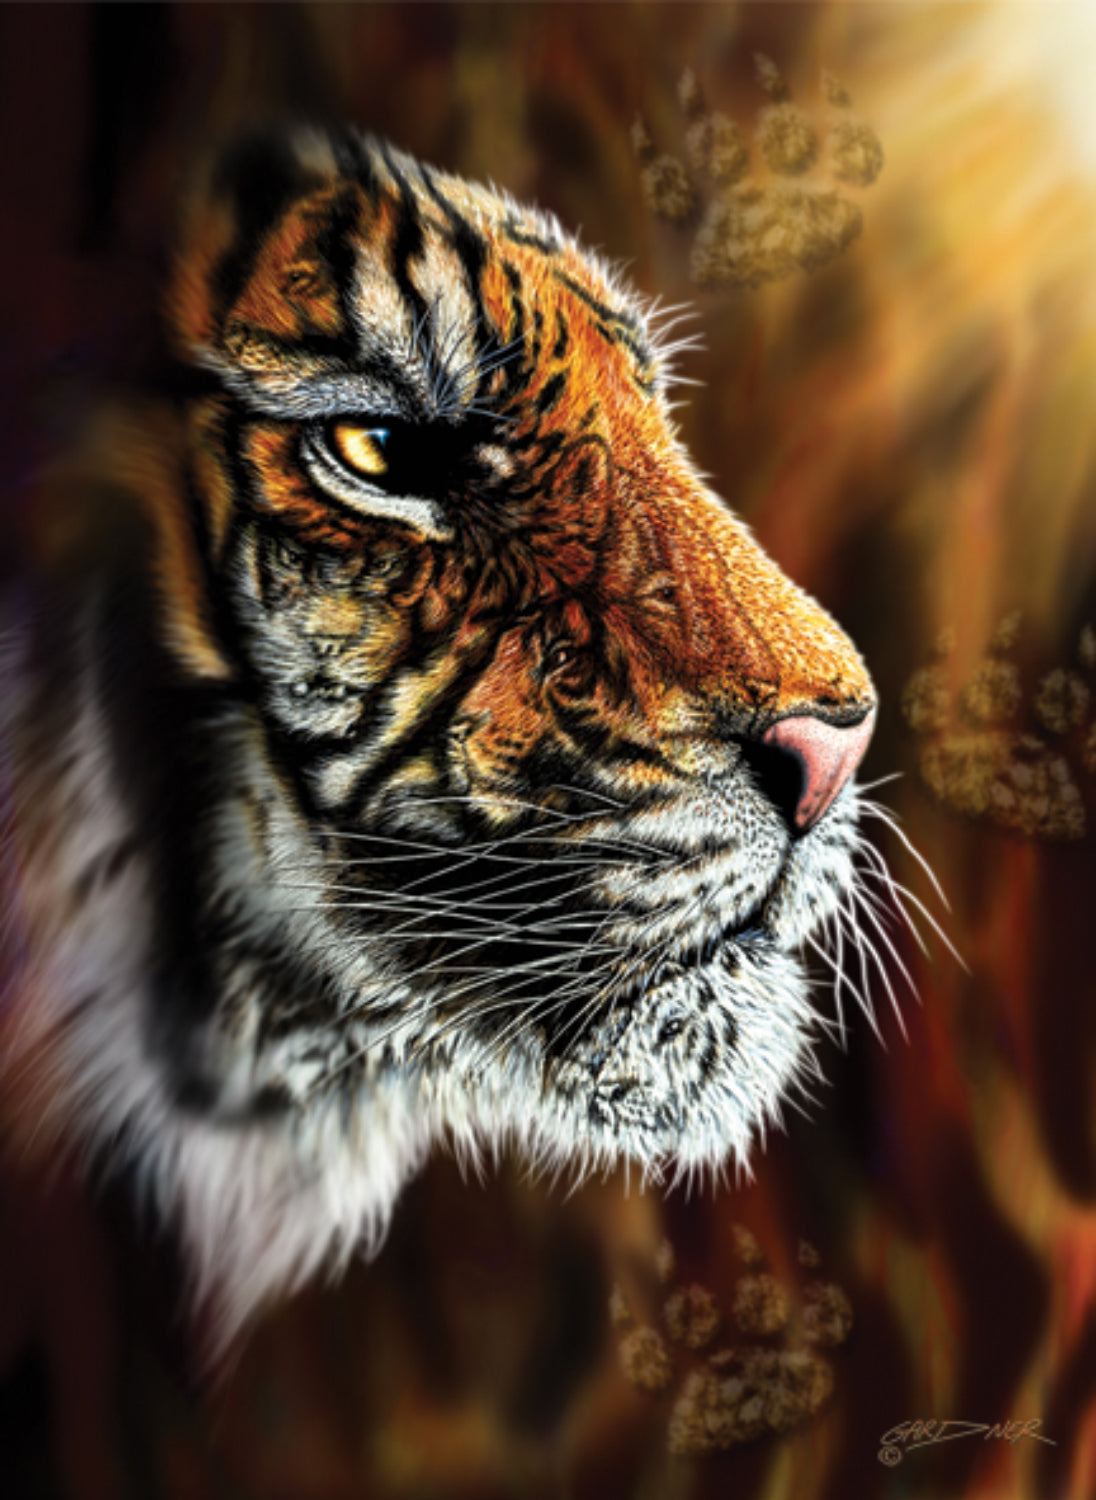 Wild Tiger by S. Gardner